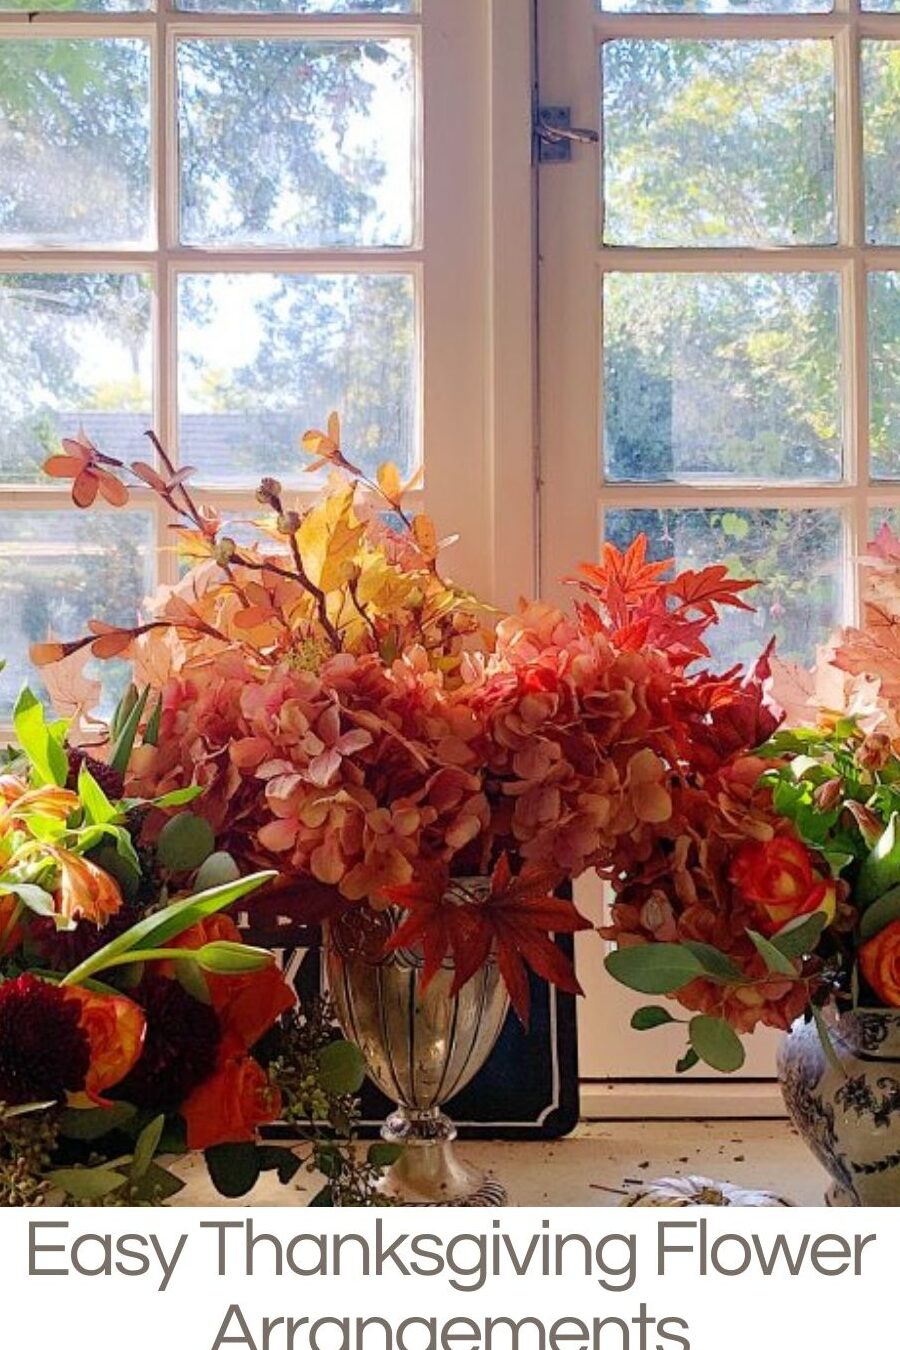 Arreglo floral de Acción de Gracias de bricolaje en tu propio jardín